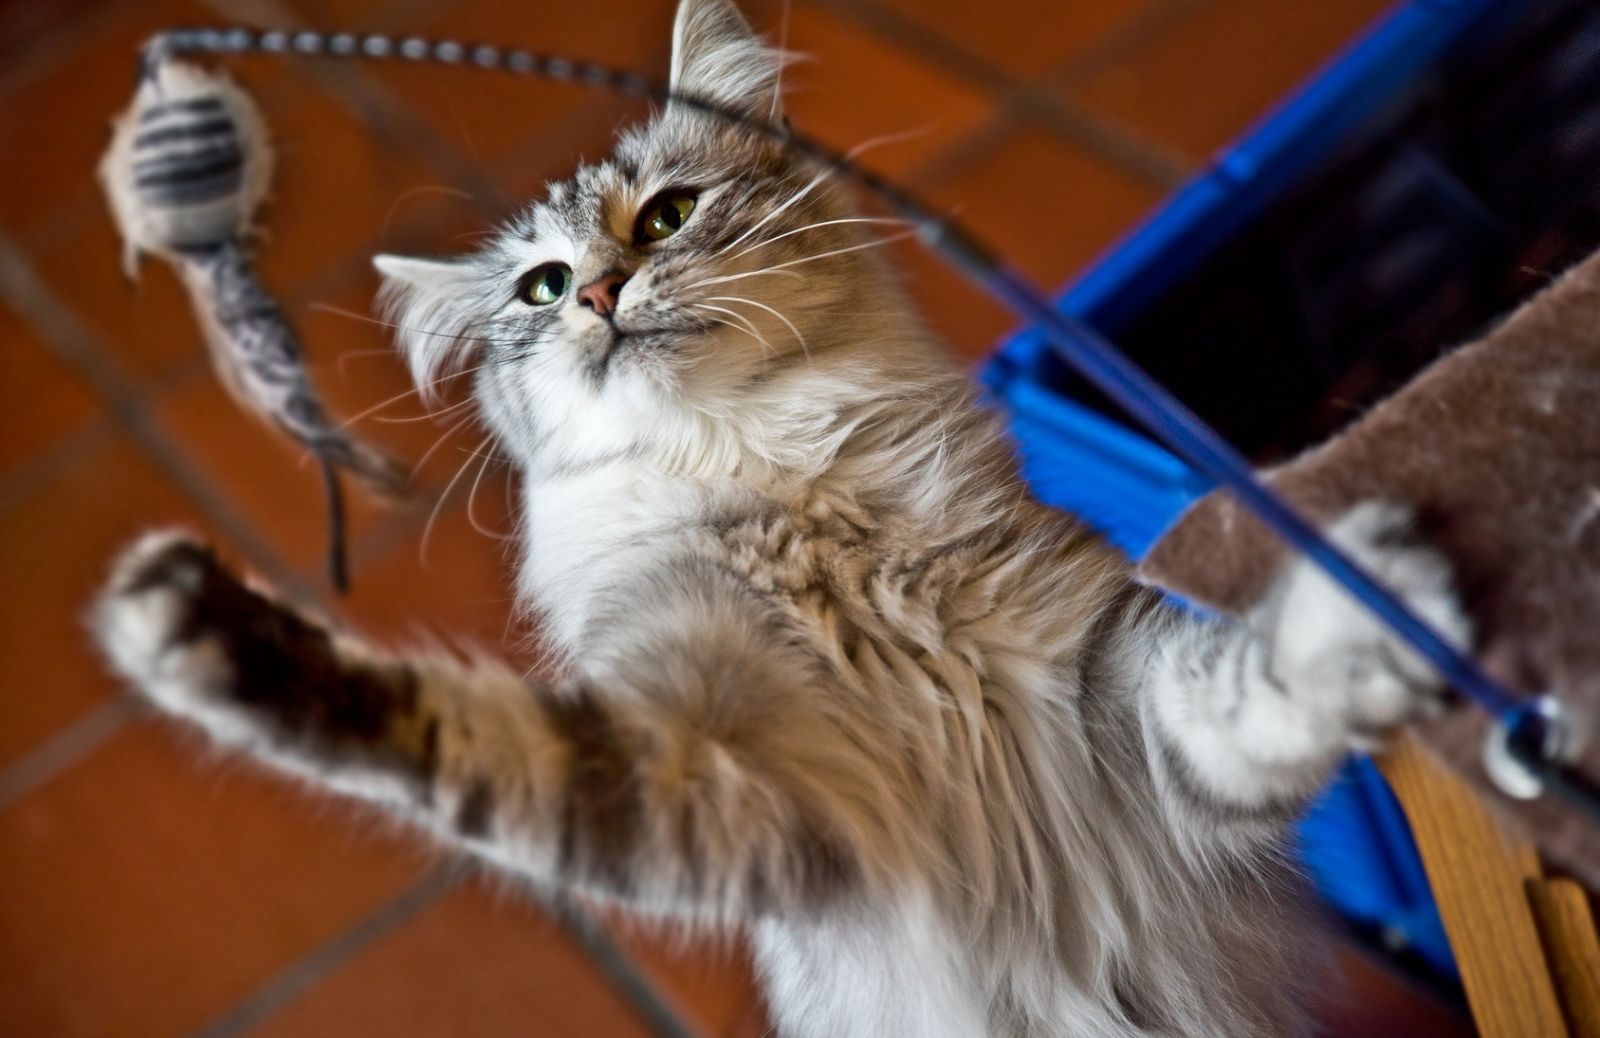 Giochi felini: l’importanza del gioco per i gatti